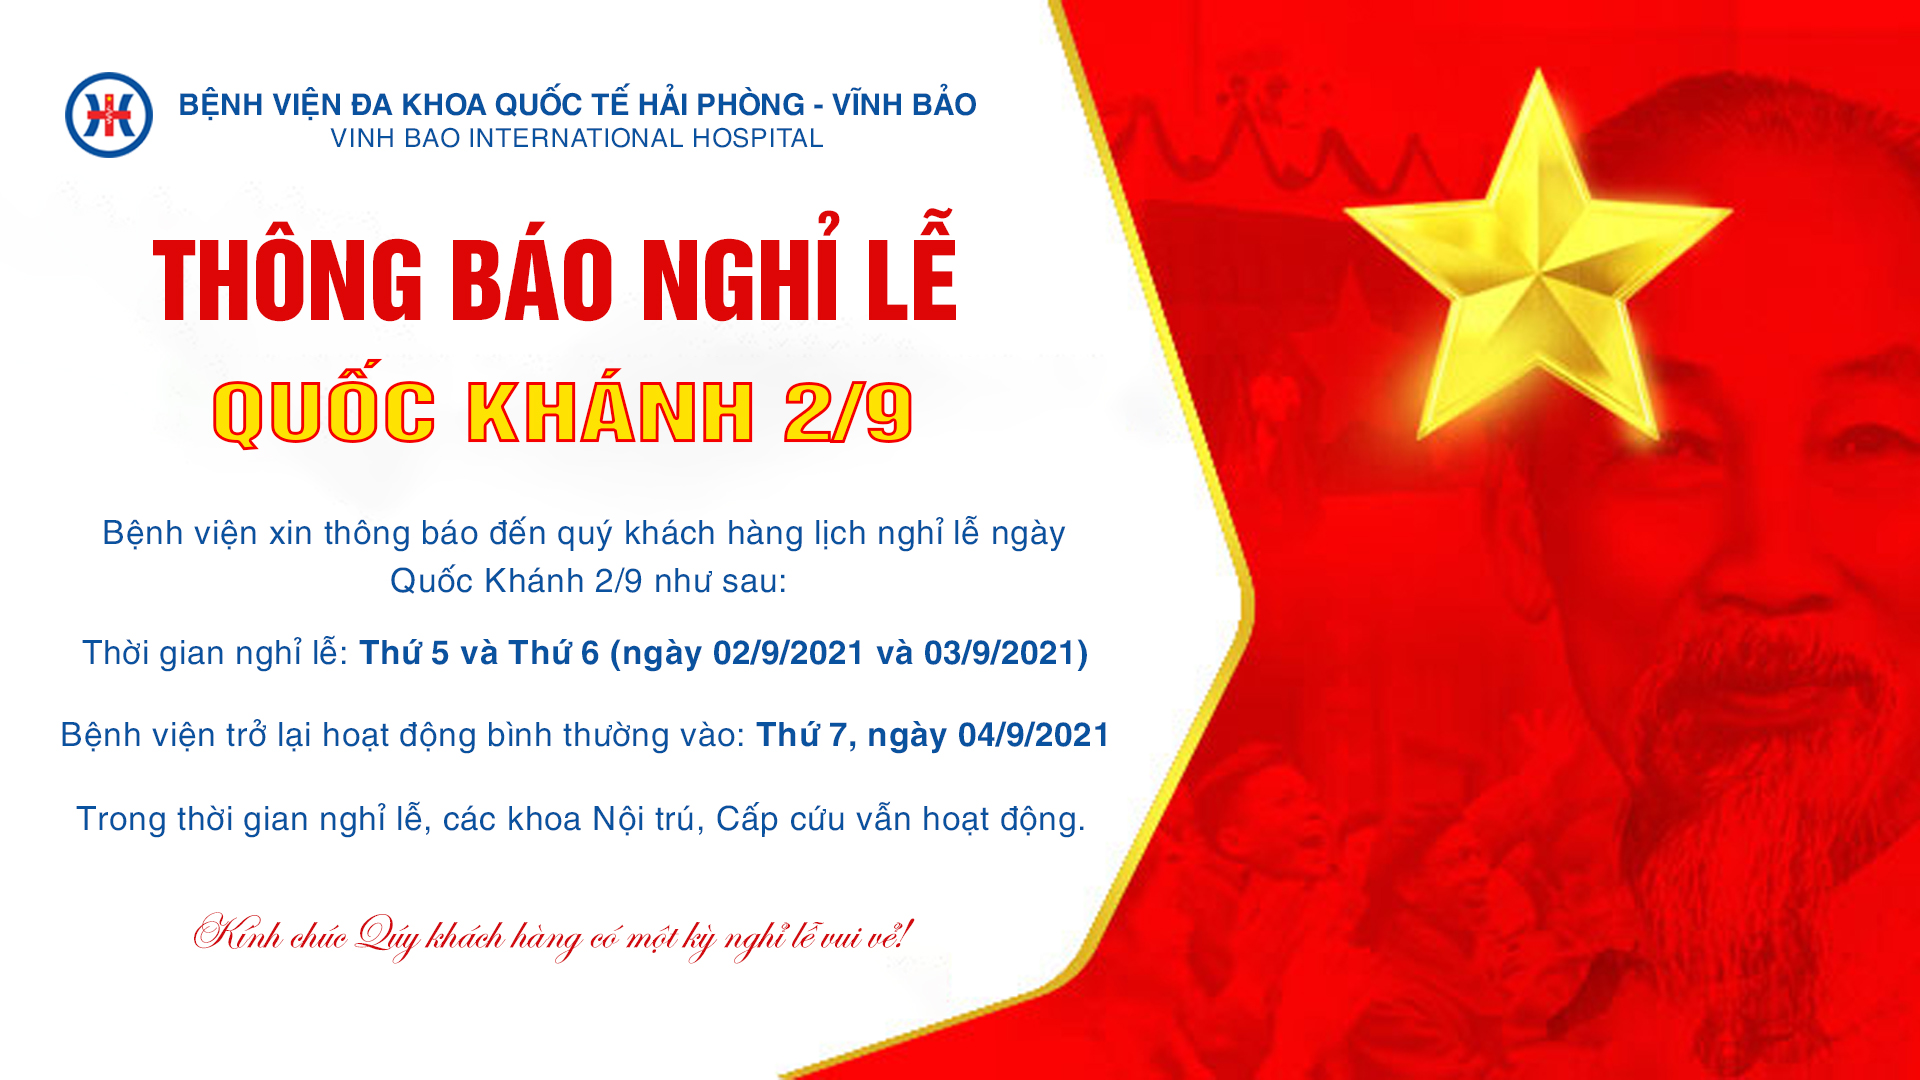 Lễ Quốc Khánh 2/9: Chuẩn bị cho Lễ Quốc Khánh 2/9! Hãy tham gia vào một trong những sự kiện lớn nhất của Việt Nam và cảm nhận hoành tráng của Lễ Quốc Khánh. Hãy cùng đồng hành với chúng tôi trong một ngày rực rỡ, đầy cảm xúc và ý nghĩa!